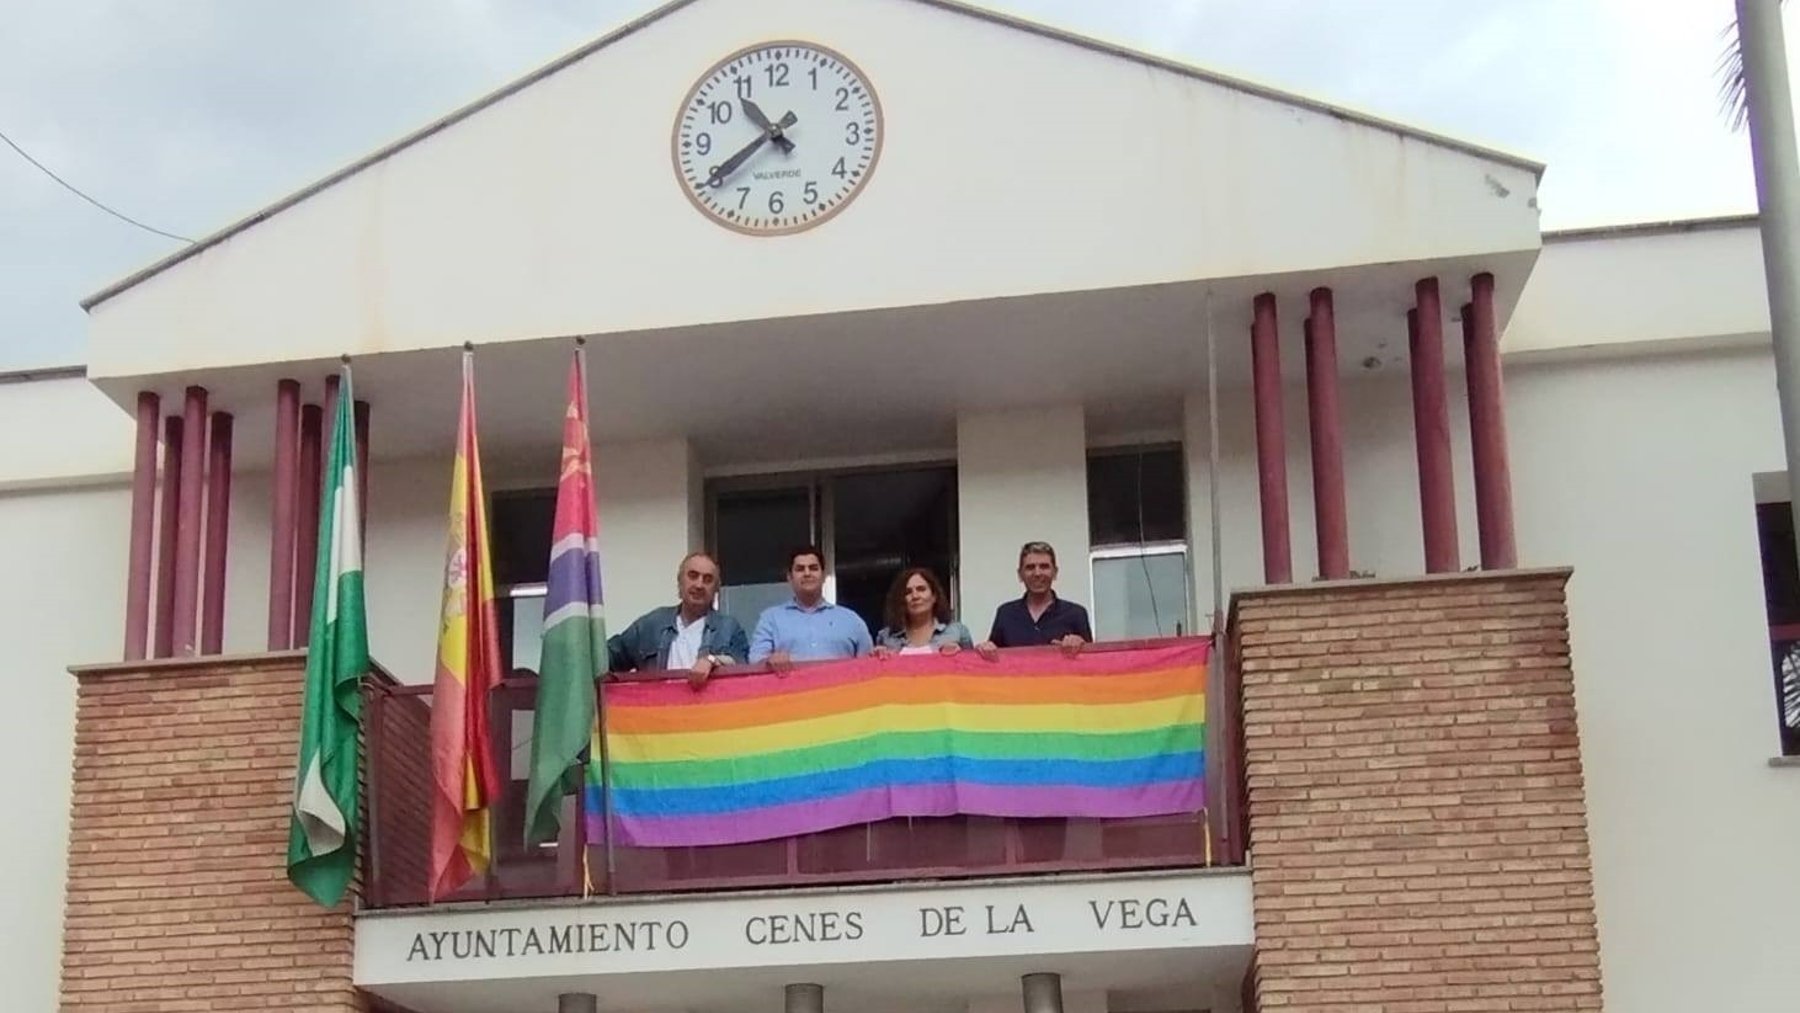 Bandera LGTBI en el Ayuntamiento de Cenes de la Vega (Granada).